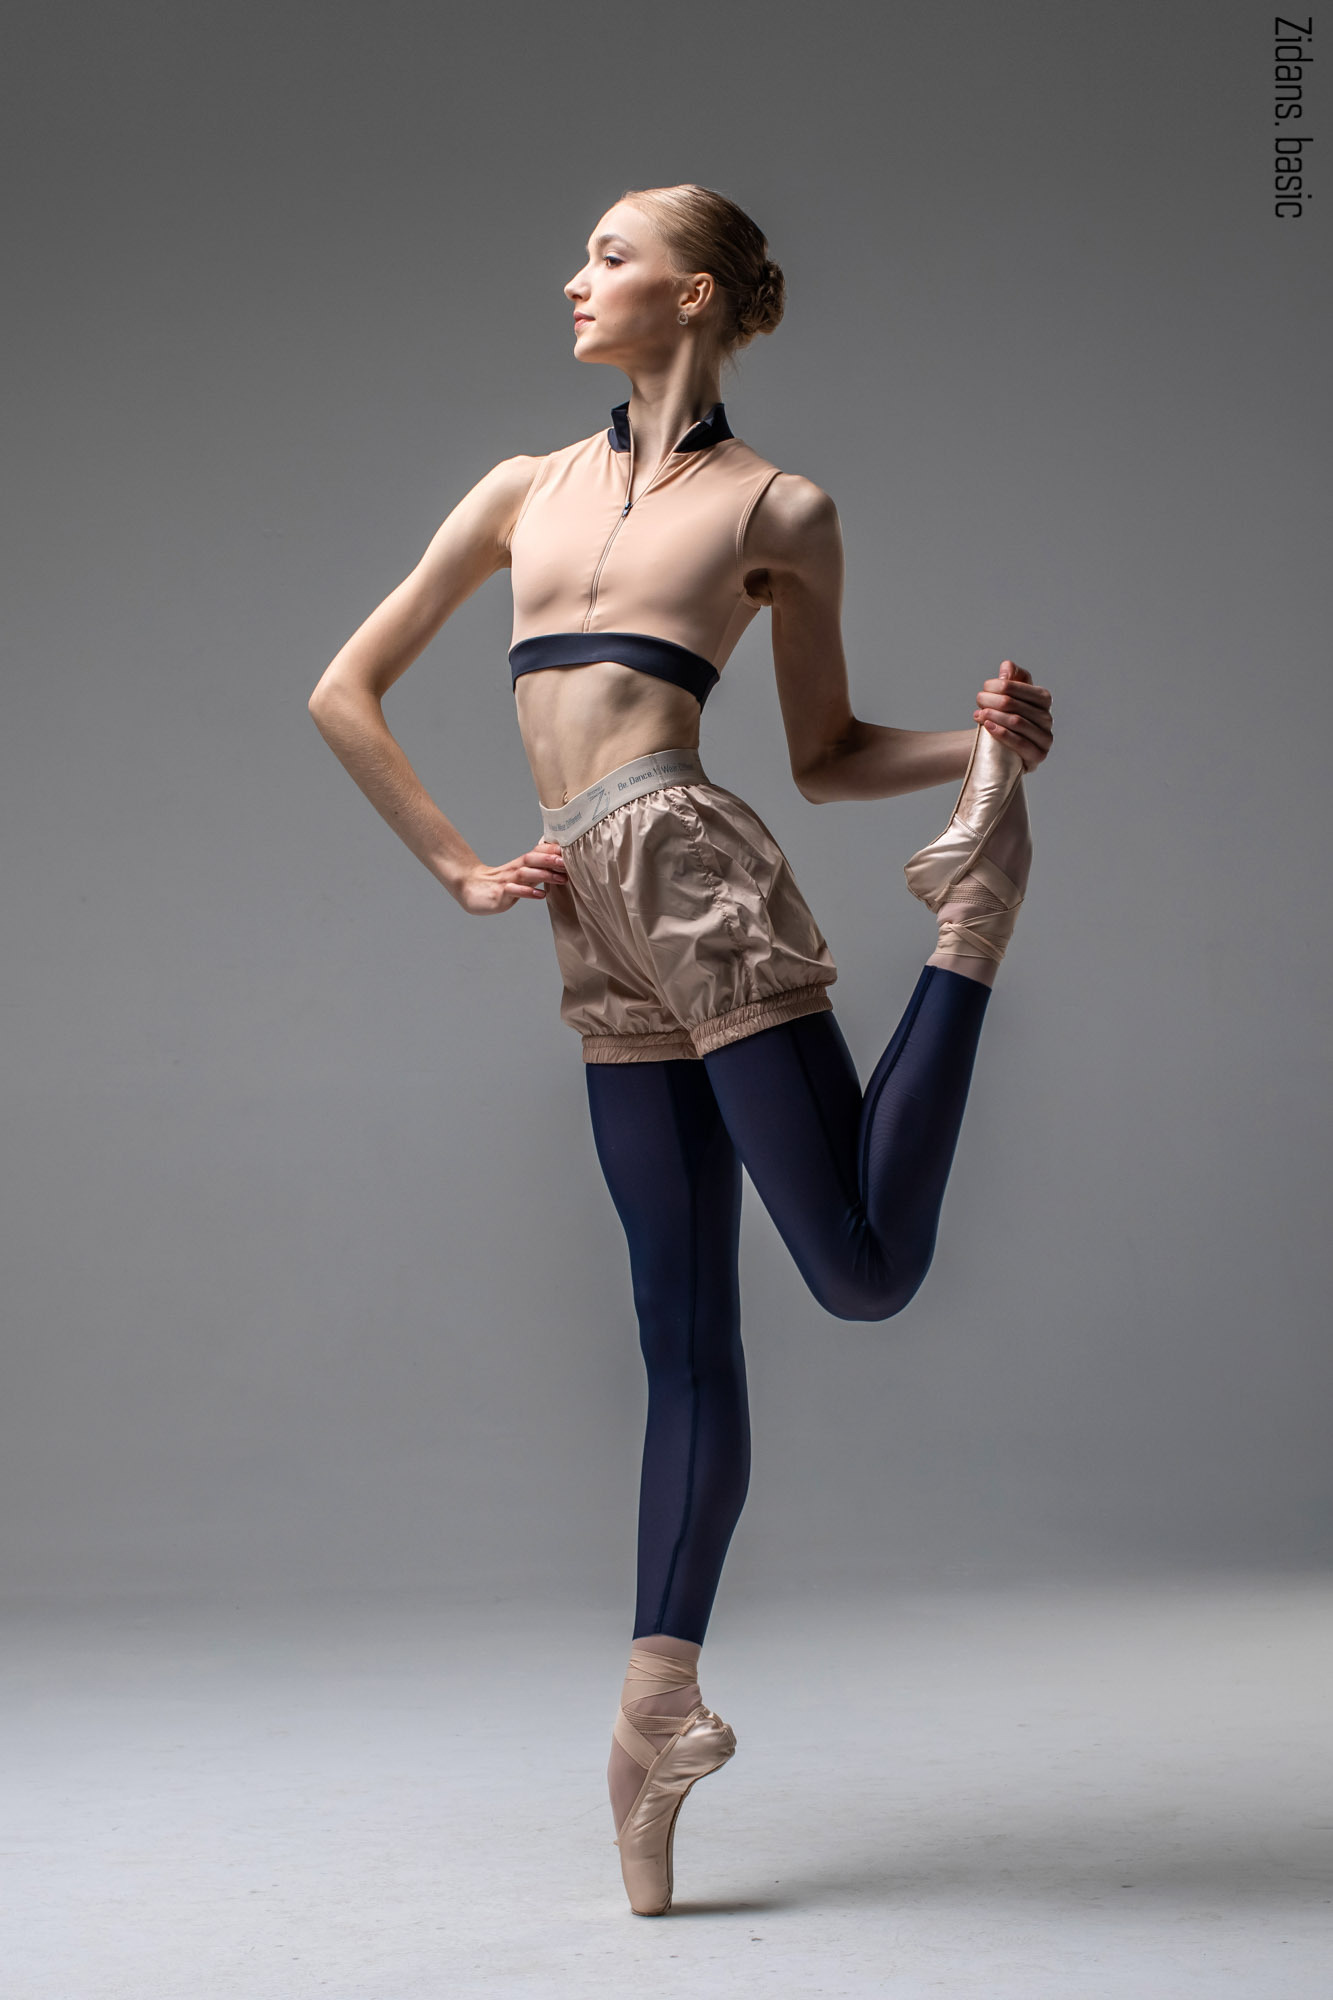 Ballet leggings for sport, yoga and dance